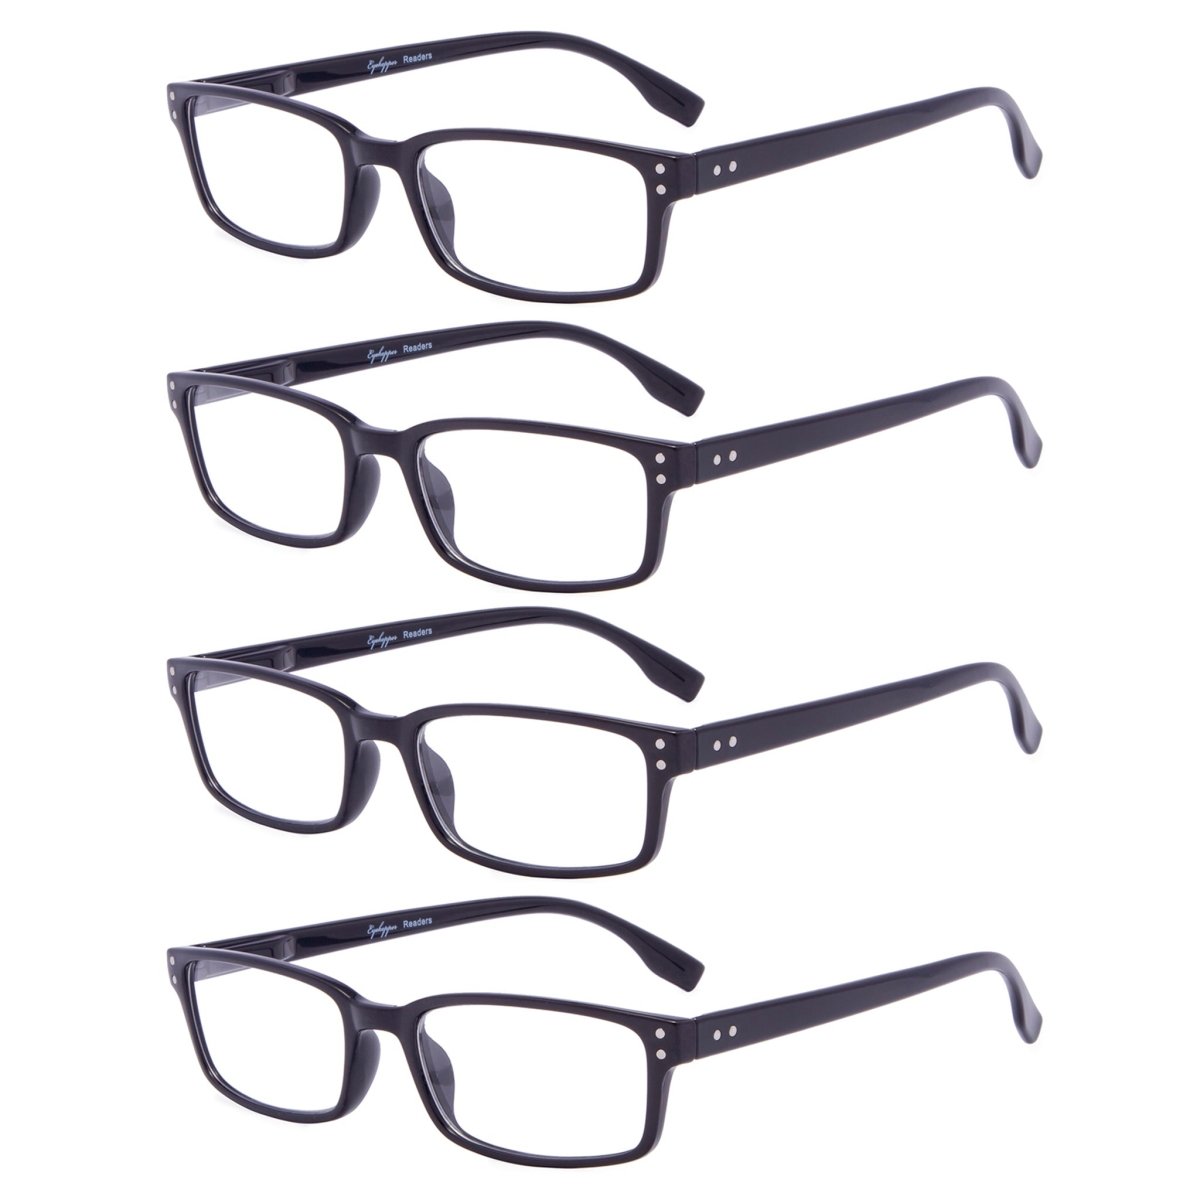 4 Pack Classical Reading Glasses for Women Men R097eyekeeper.com